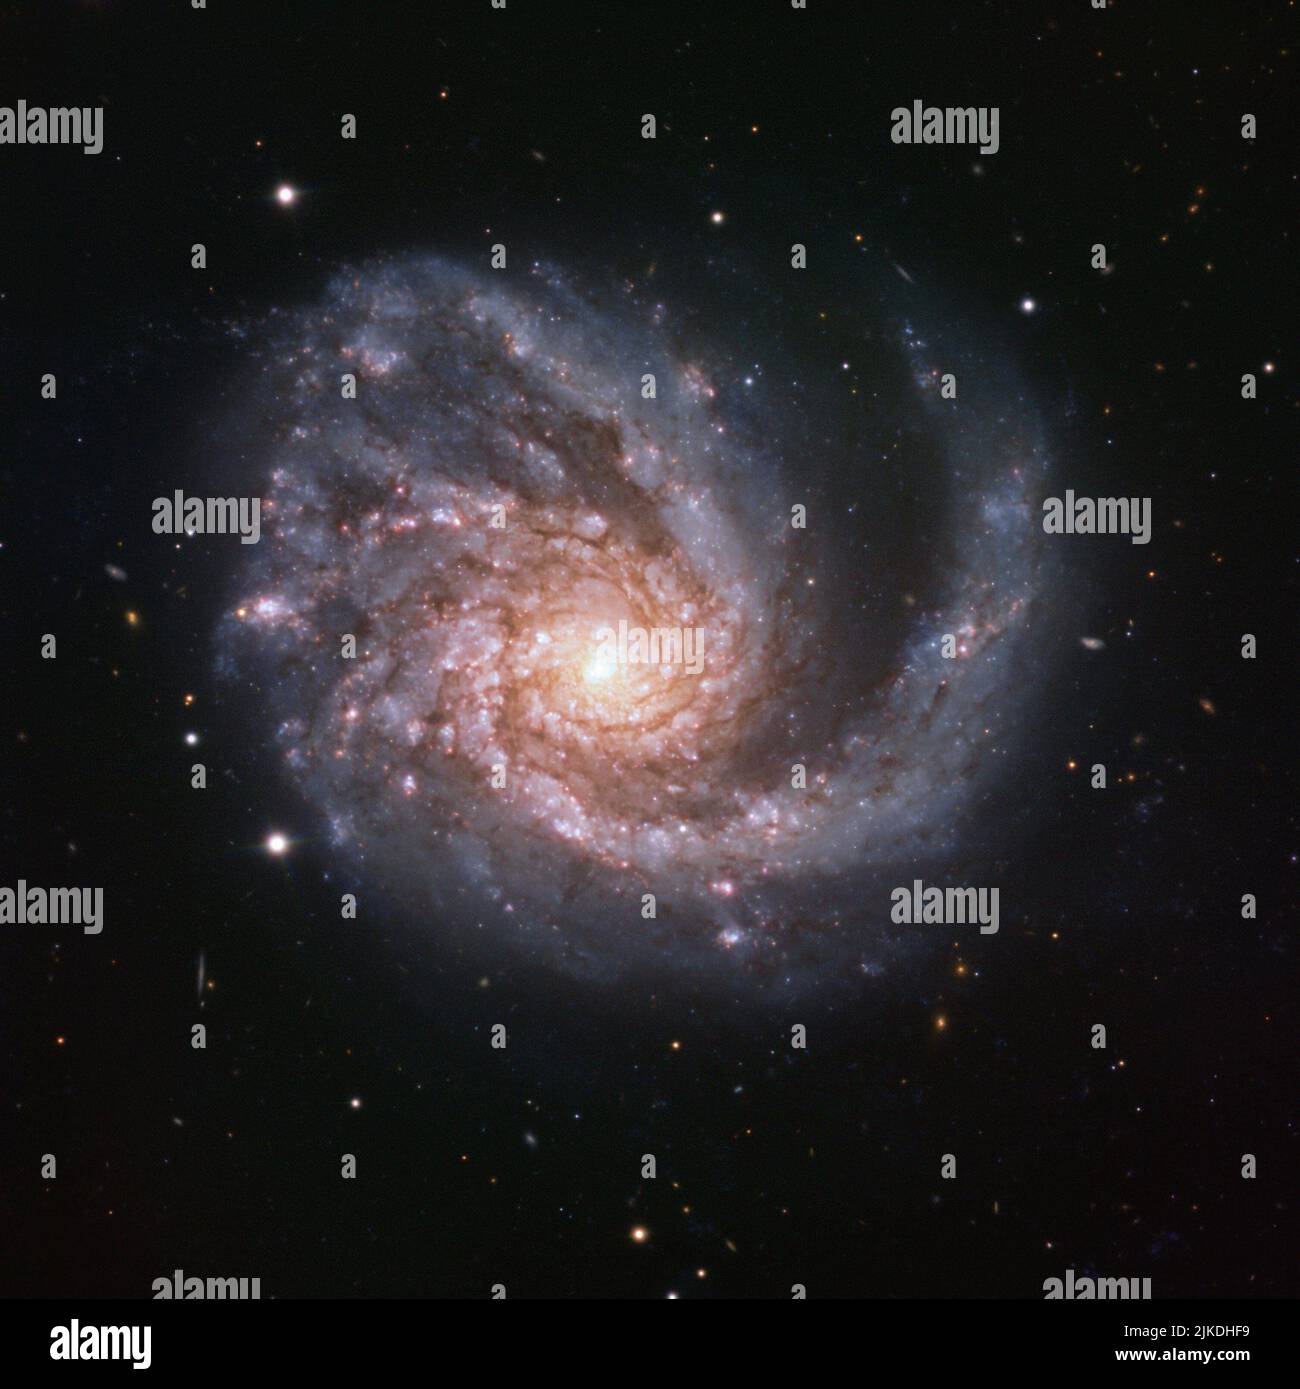 La imagen presenta una galaxia llamada NGC 4254, también conocida como Messier 99, un hermoso espectáculo cósmico situado en la constelación de Coma Berenices Foto de stock